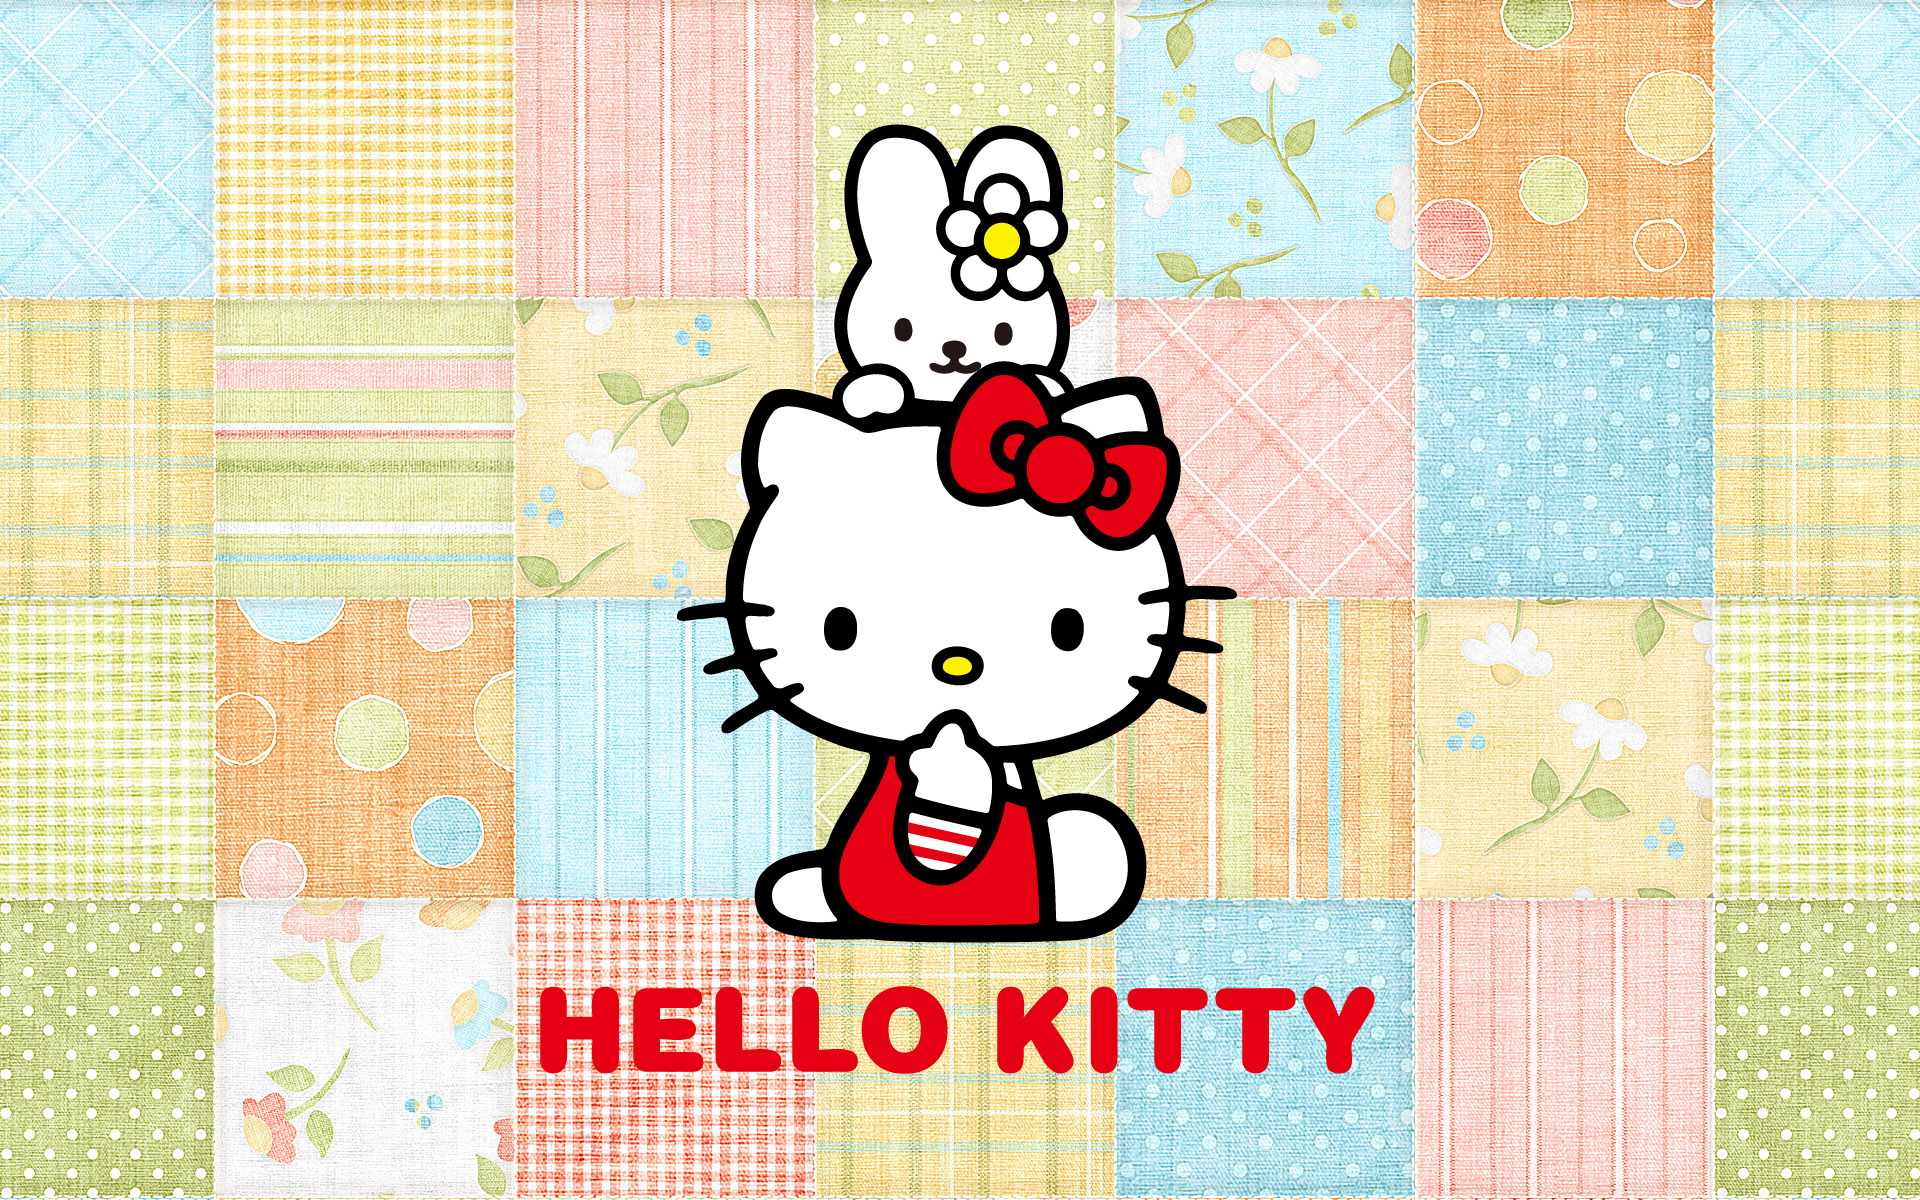 Hello kitty wallpaper